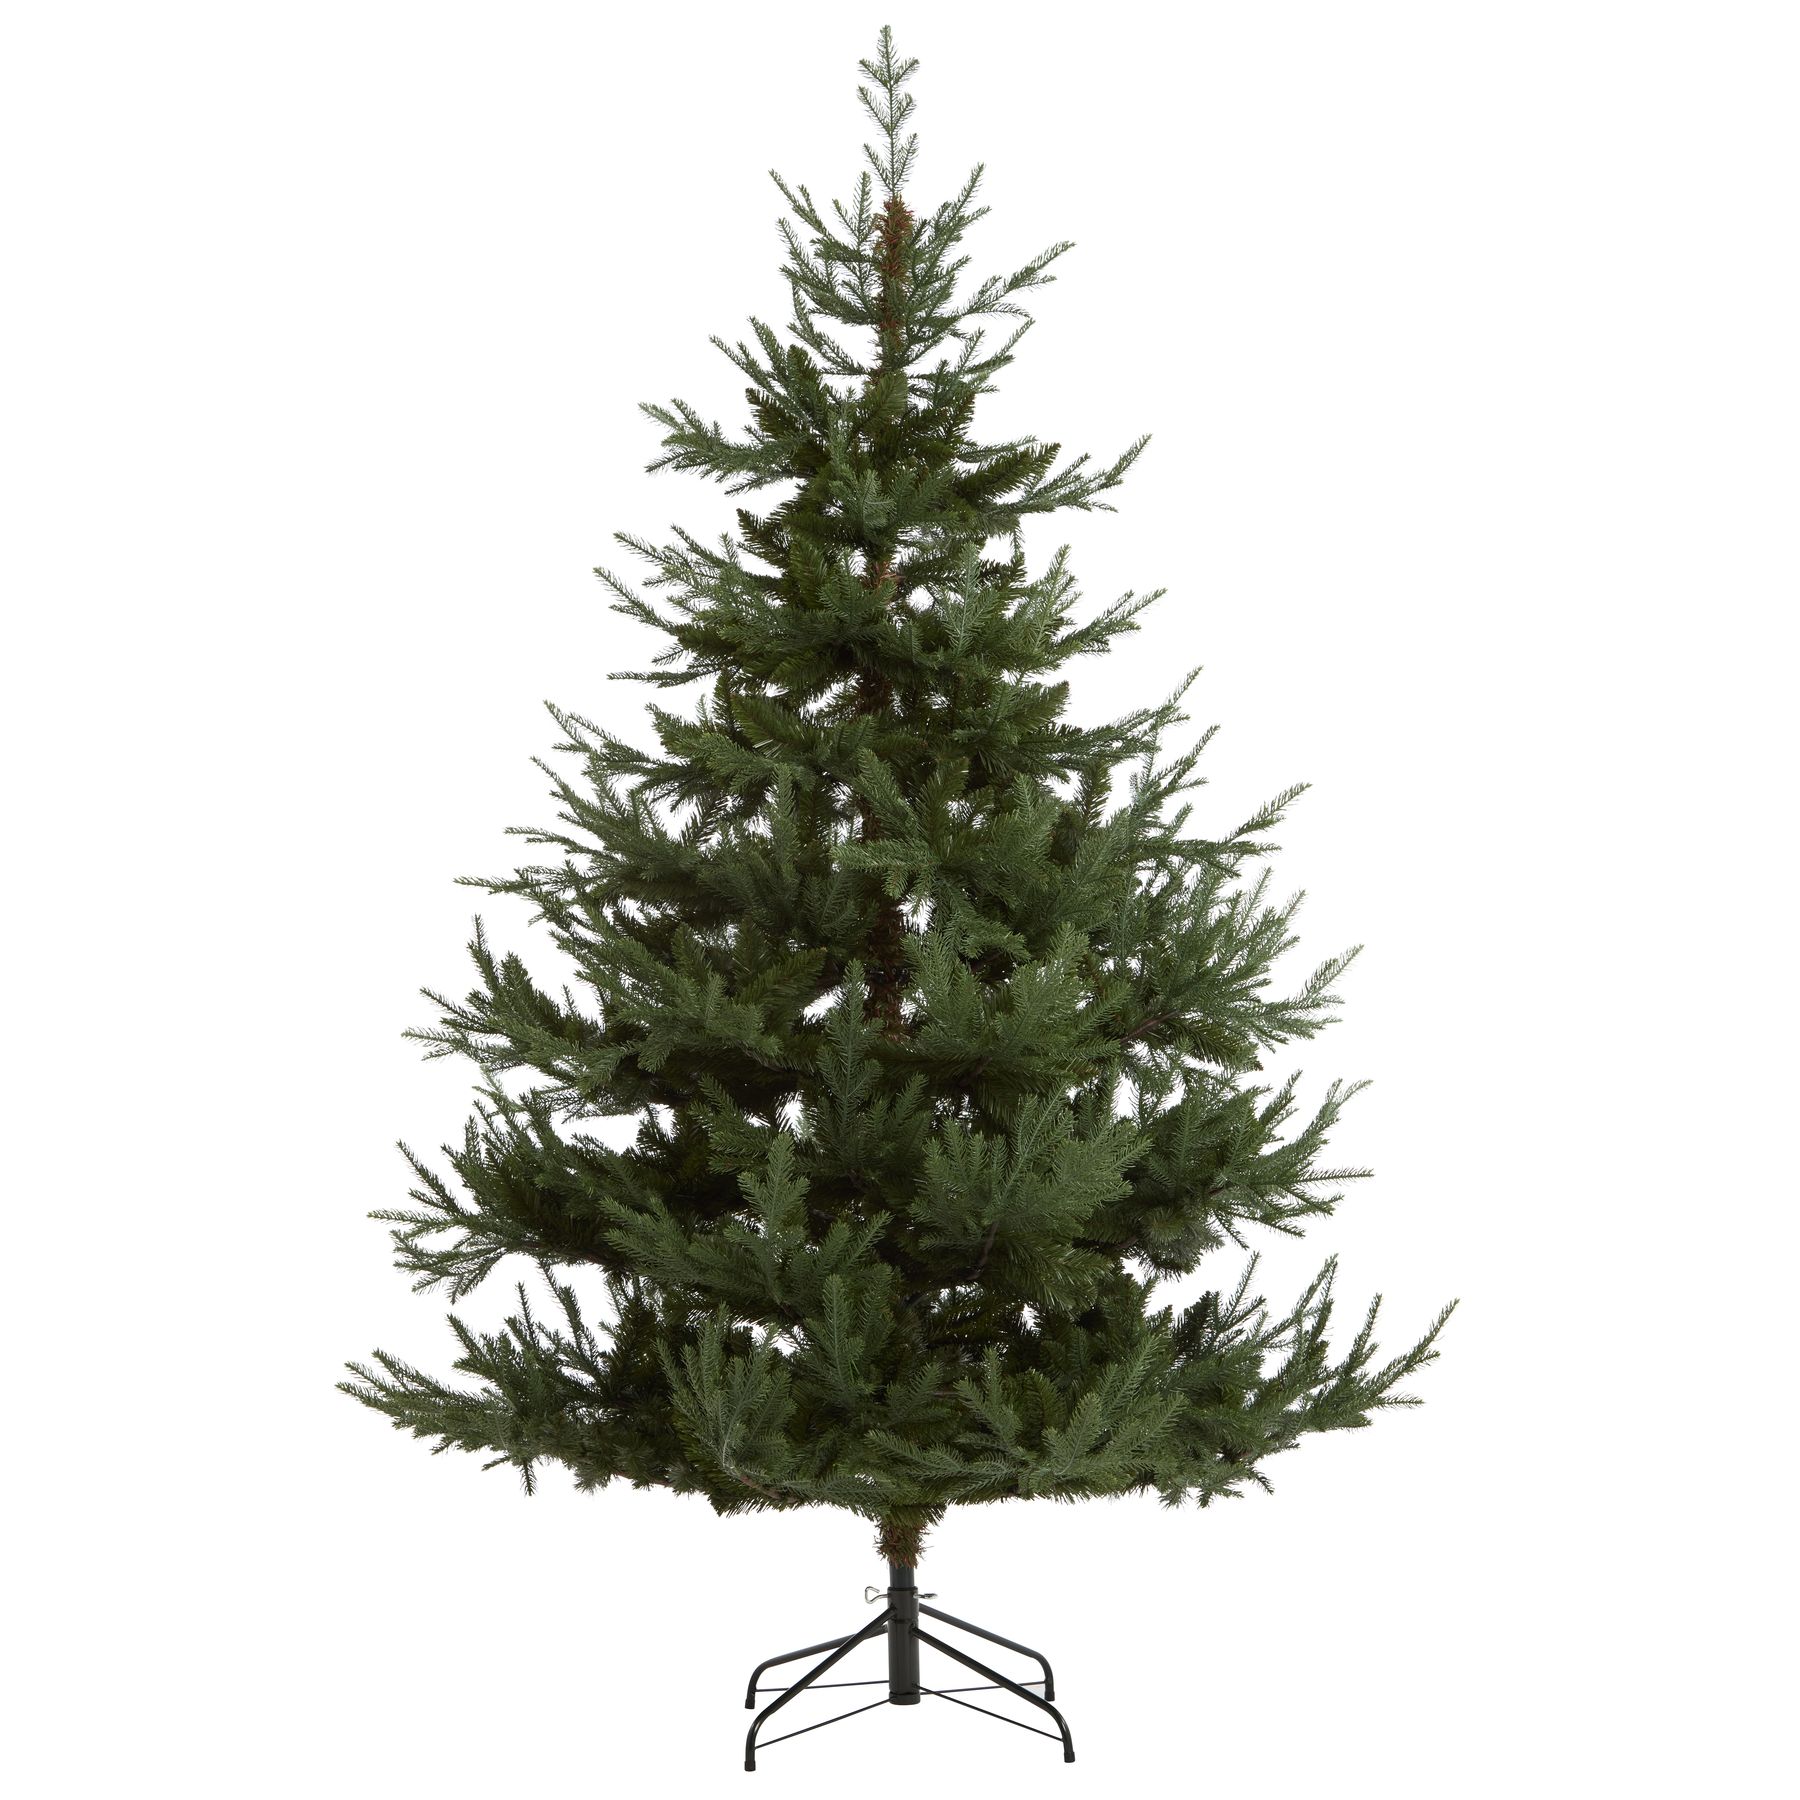 Large Pine Tree - Image 1